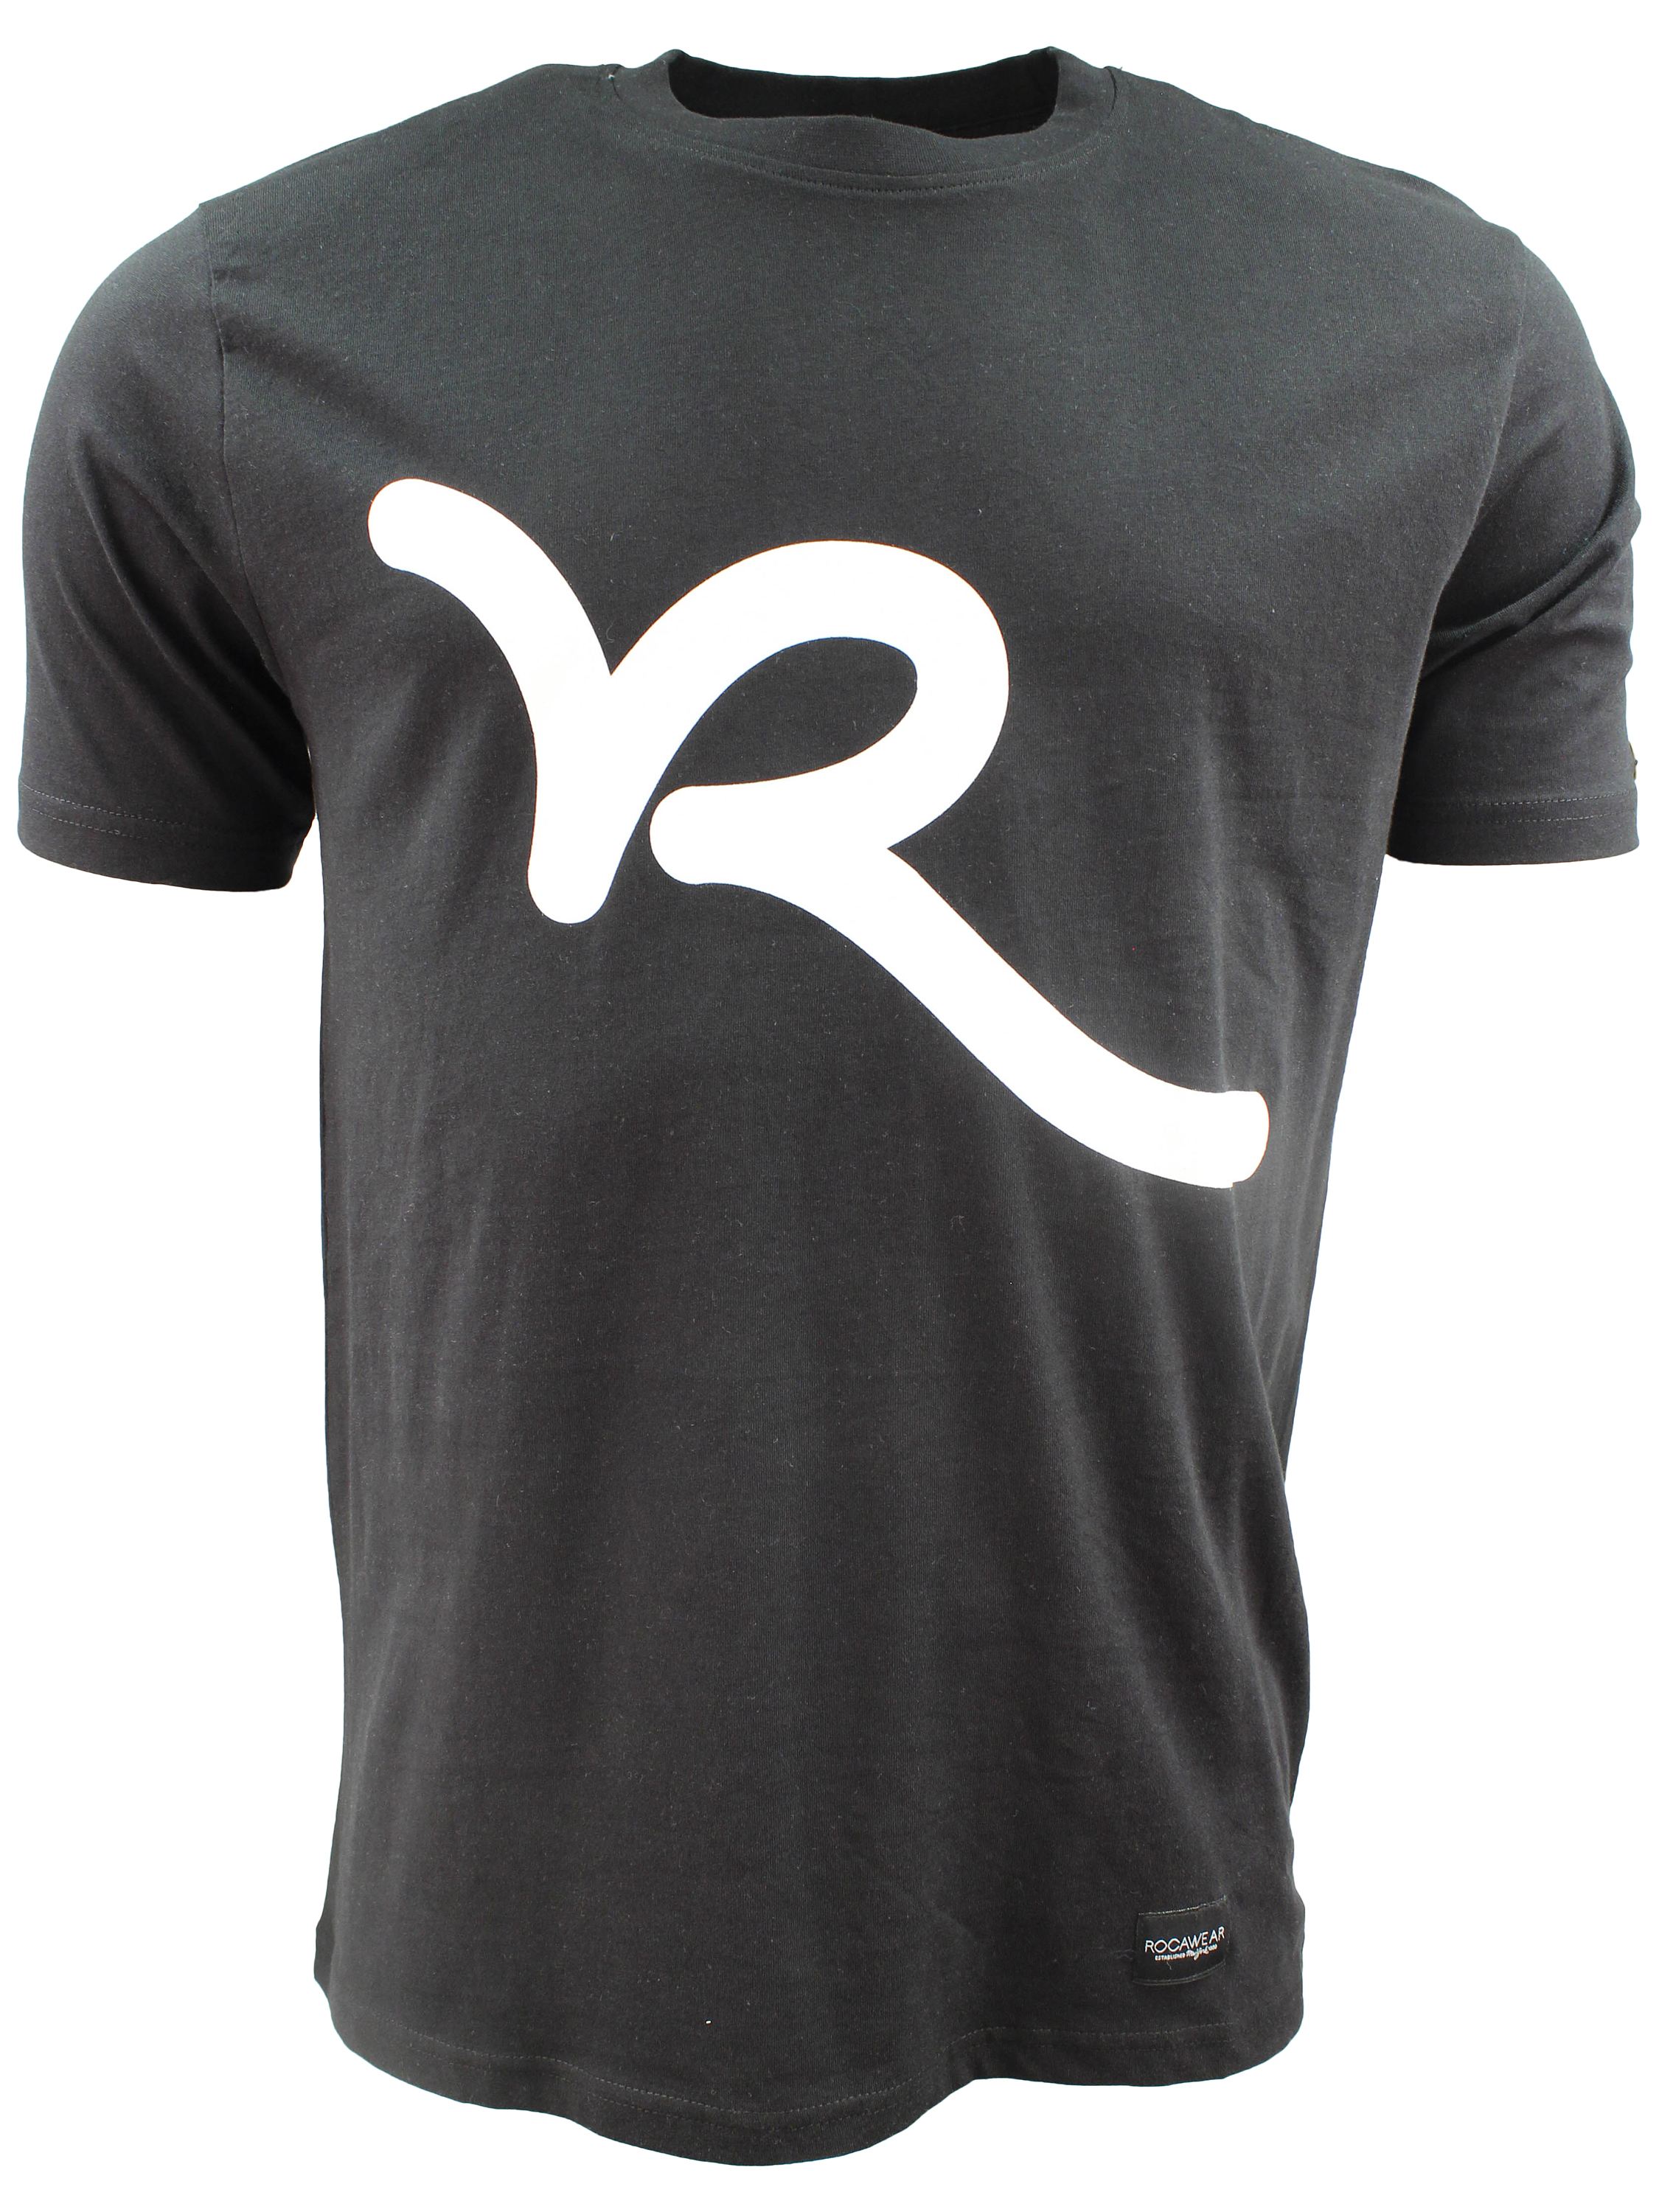 søster Ret pude Buy Rocawear T160 T-shirt Black